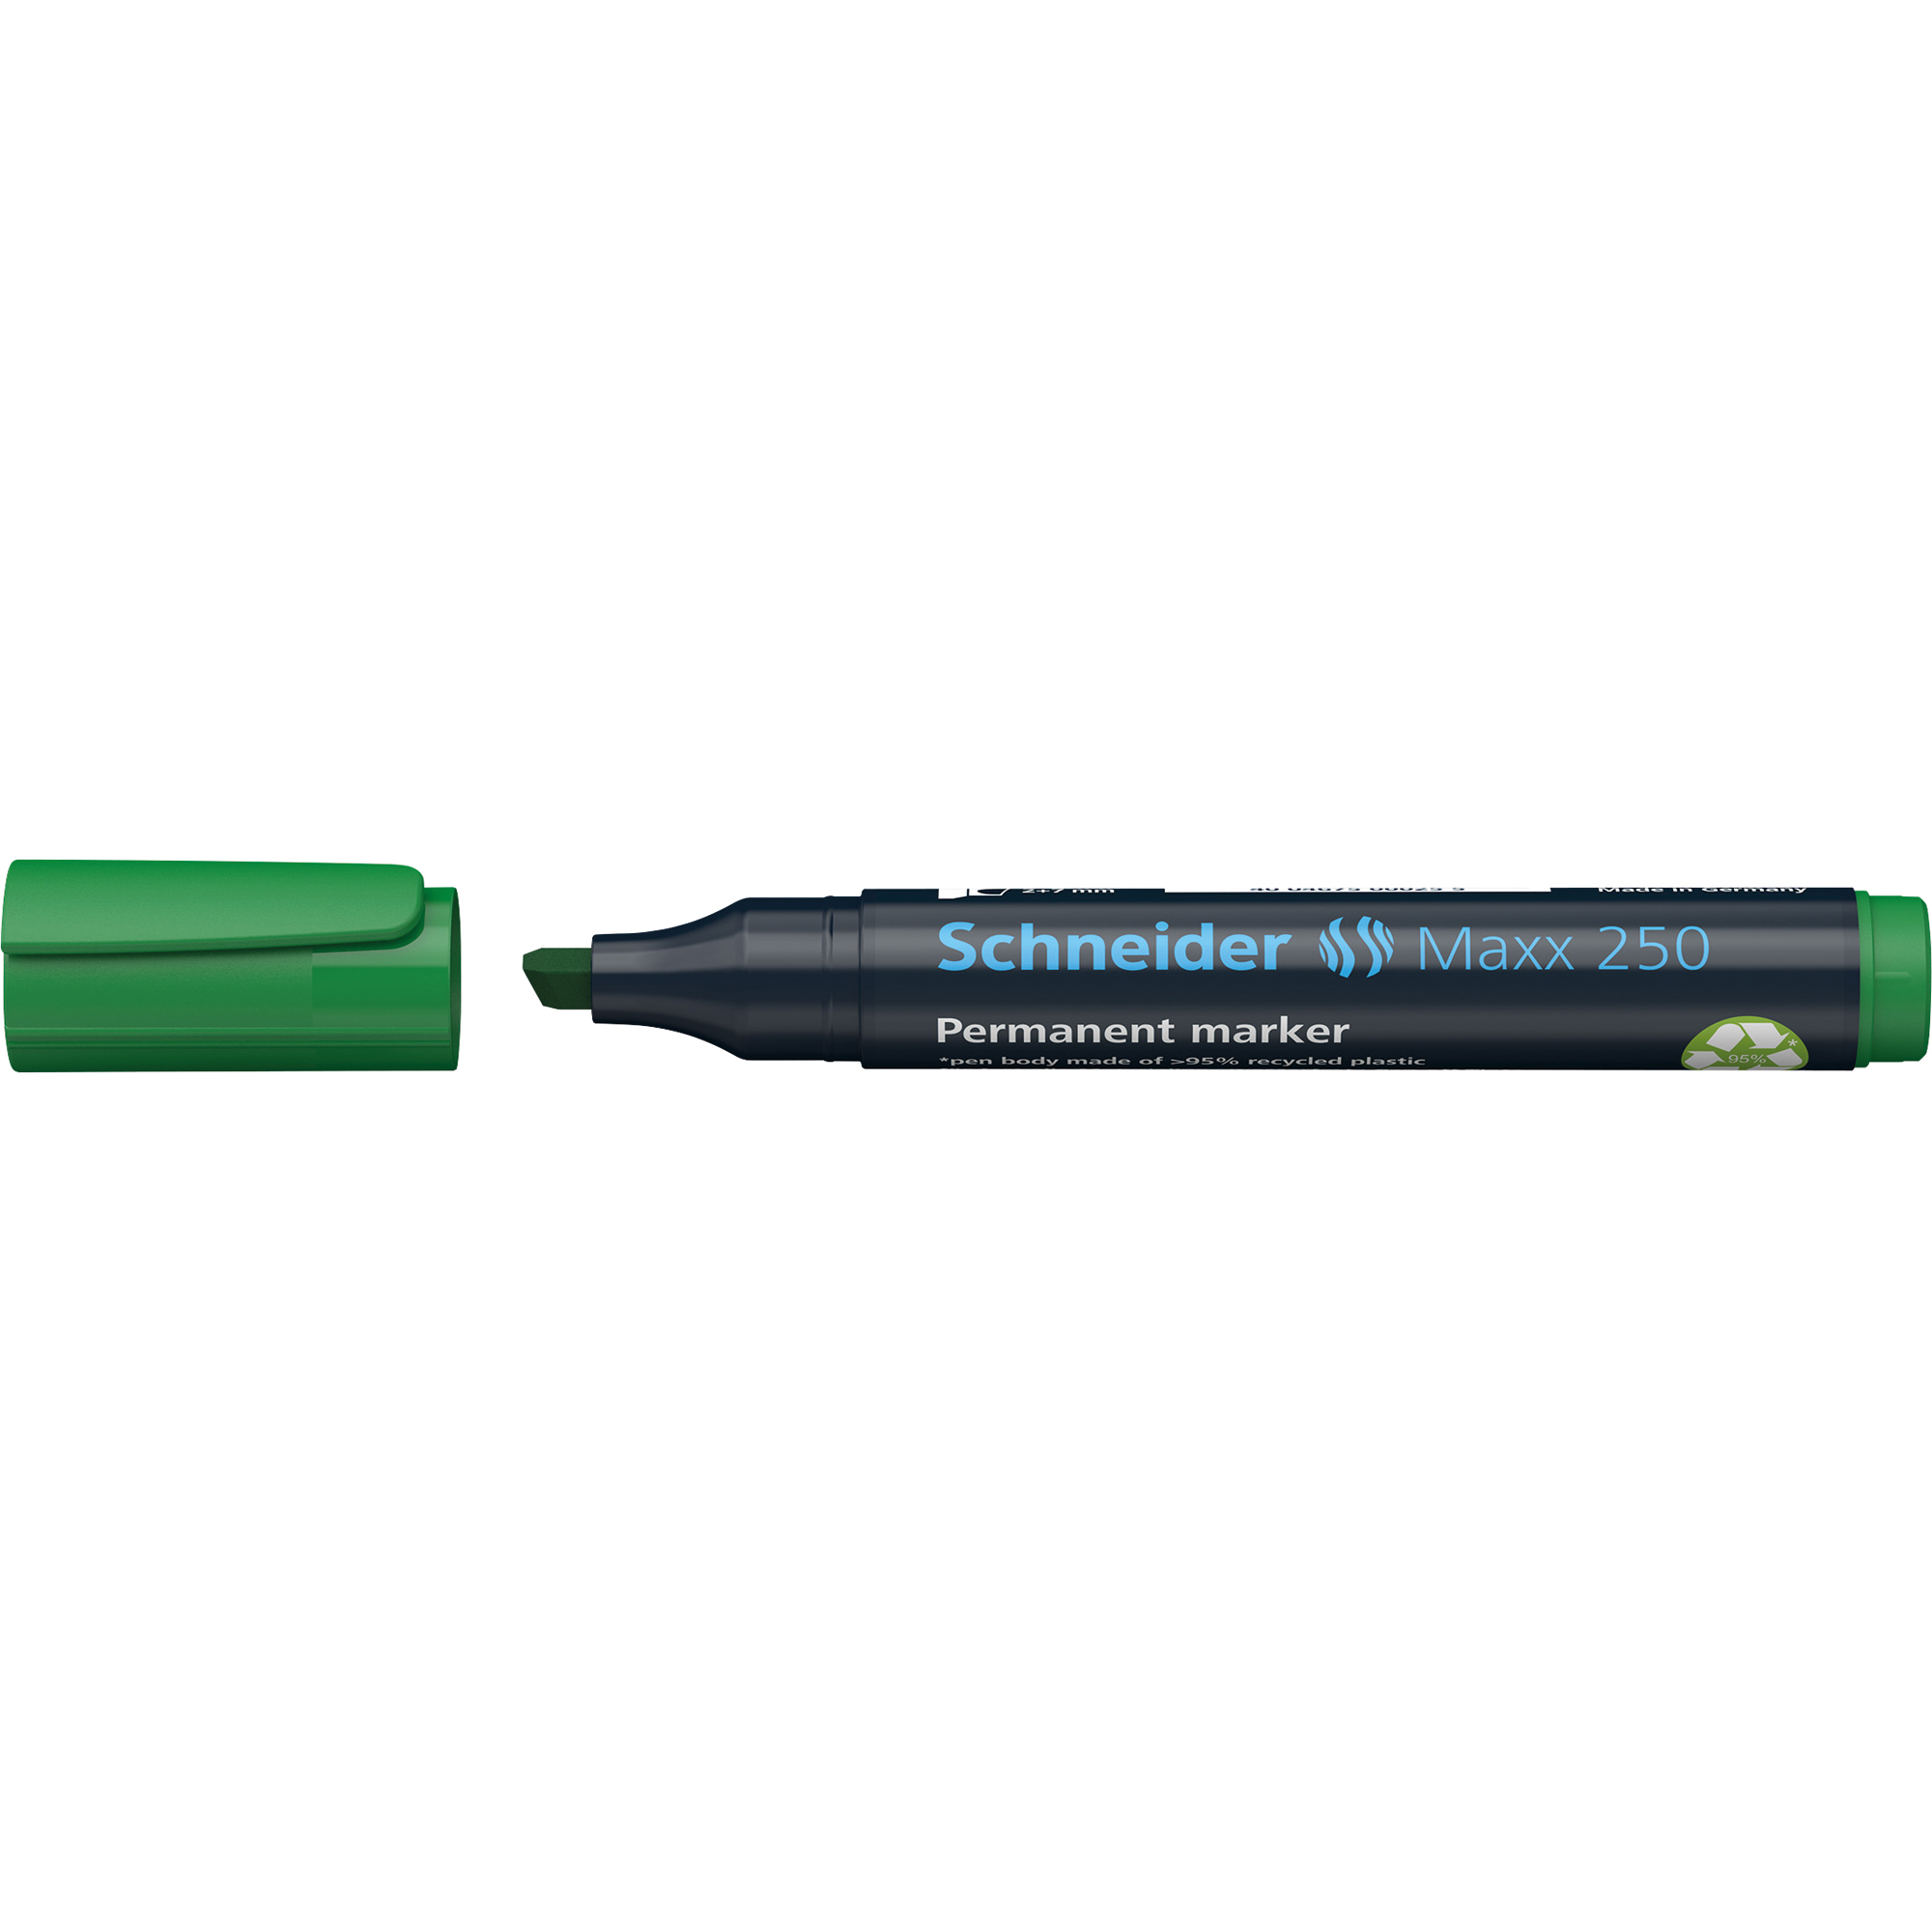 Schneider Permanentmarker Maxx 250 grün